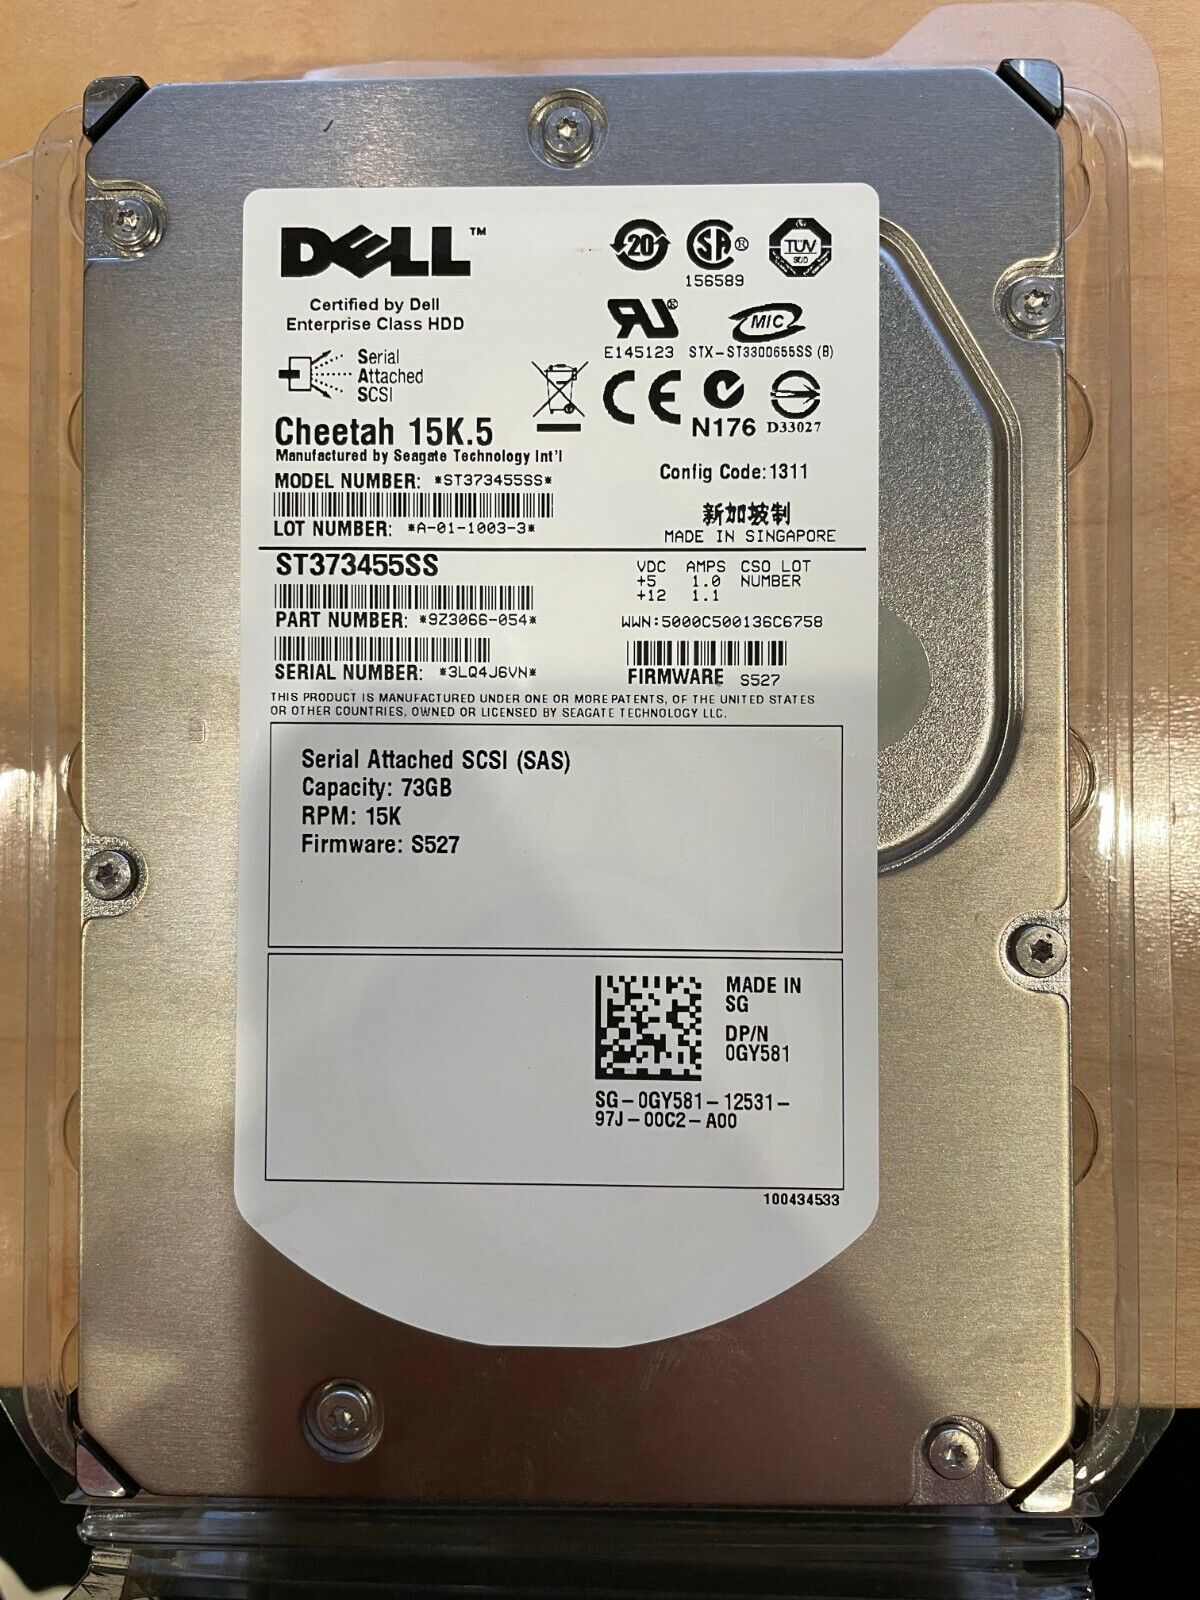 Dell Cheetah 15K.5 73GB, Internal, 15000RPM, 3.5 inch (ST373455ss) Hard Drive